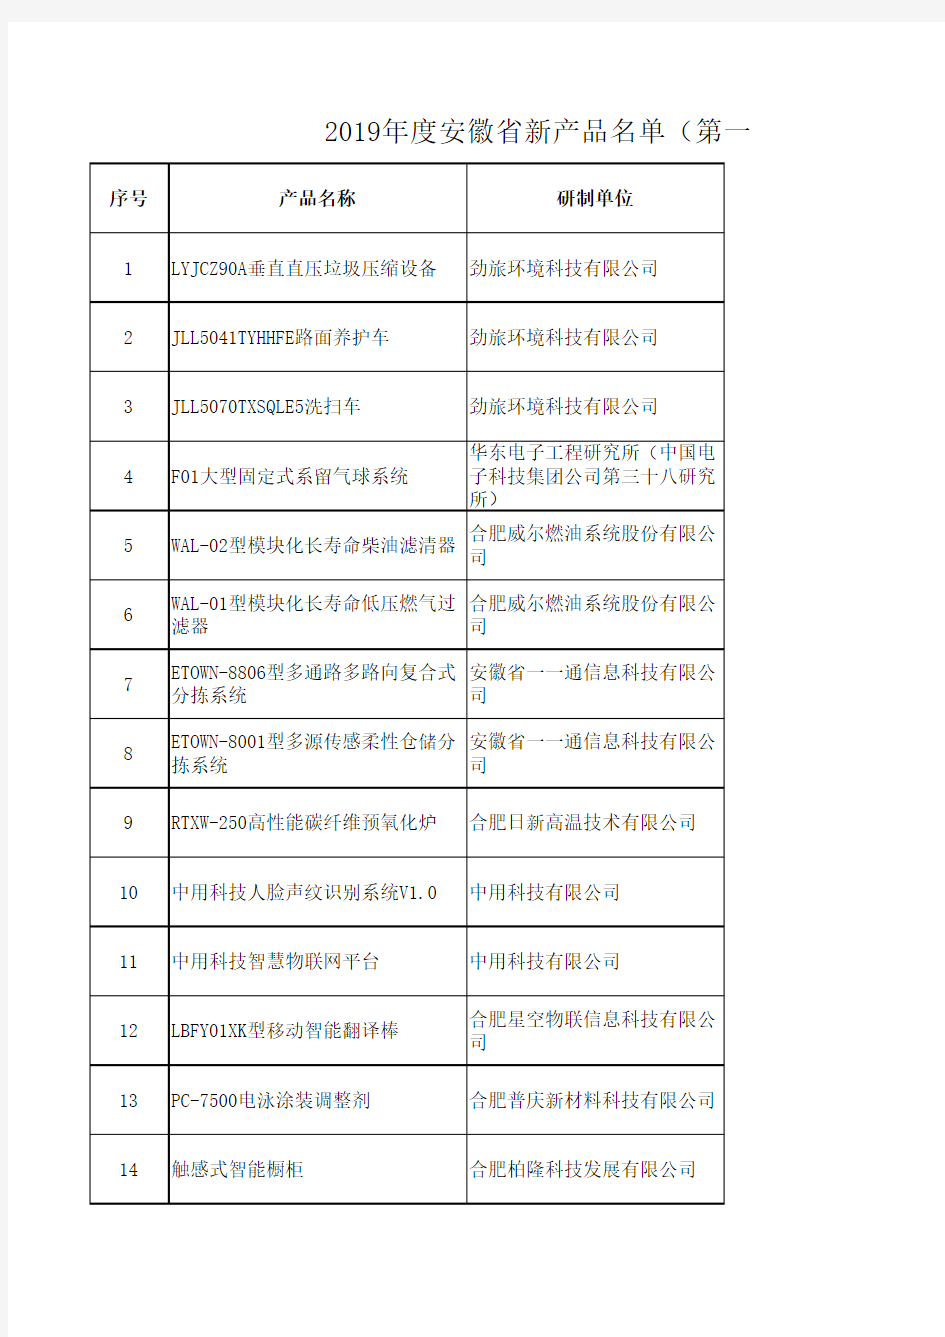 2019年度安徽省新产品名单(第一批)